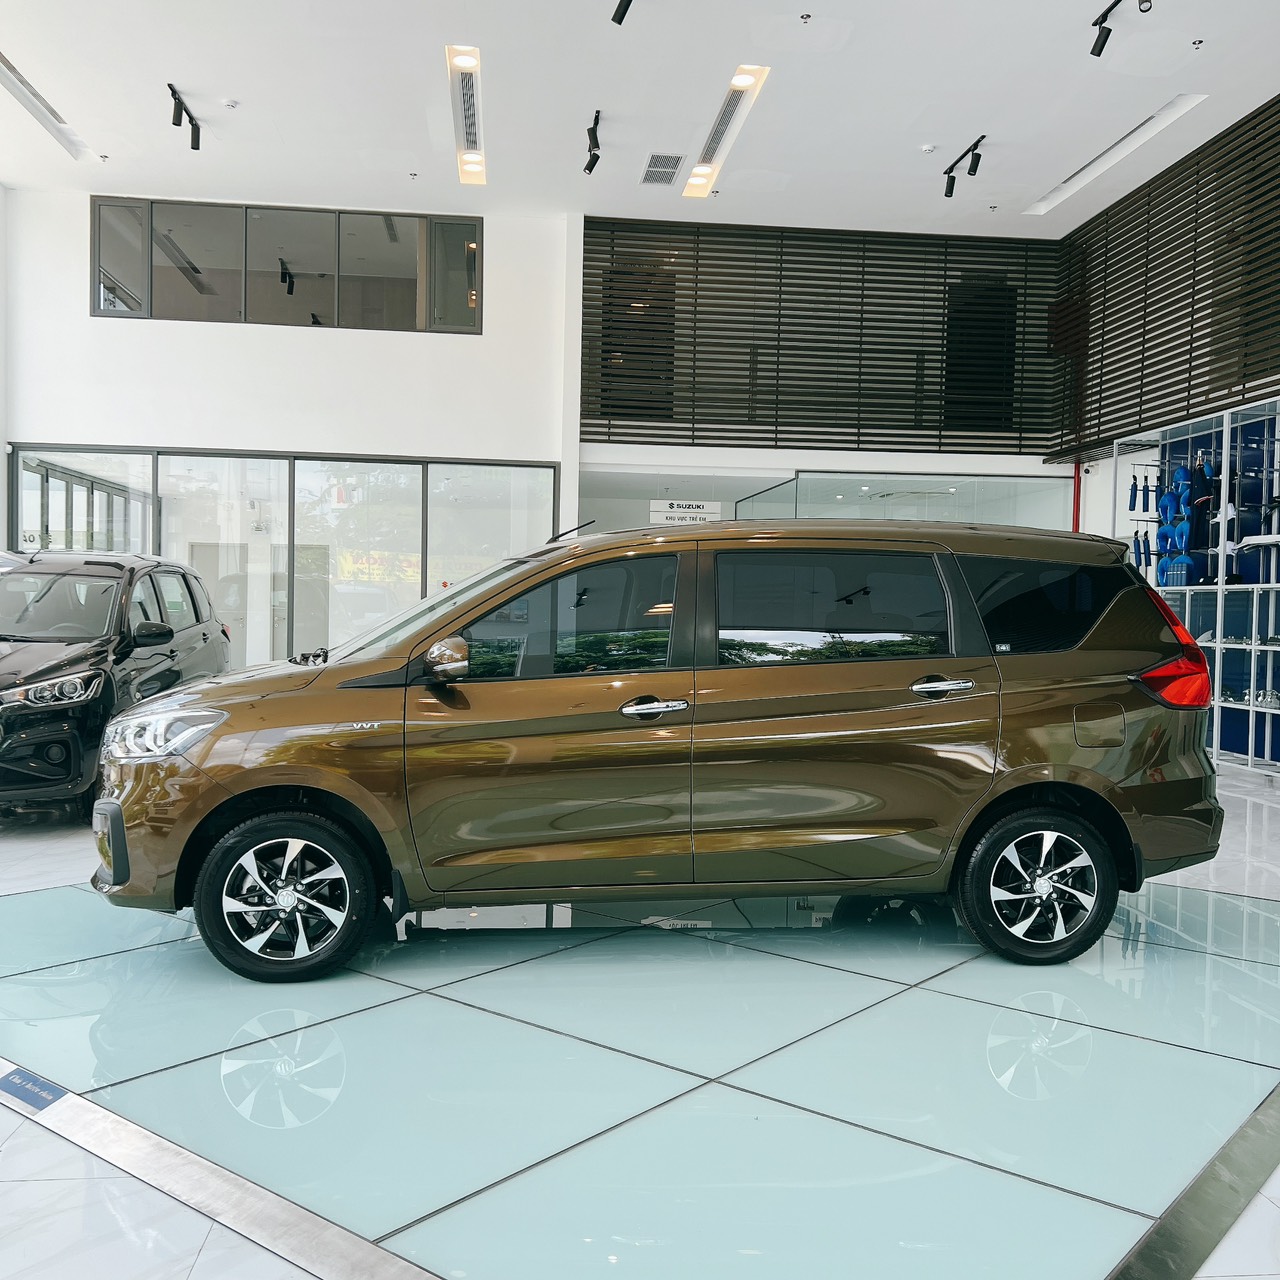 Khách hàng mua xe Suzuki Ertiga Hybrid AT Xanh Rêu sẽ được hưởng nhiều chương trình khuyến mãi hấp dẫn như tặng phụ kiện, hỗ trợ lãi suất vay mua xe,...